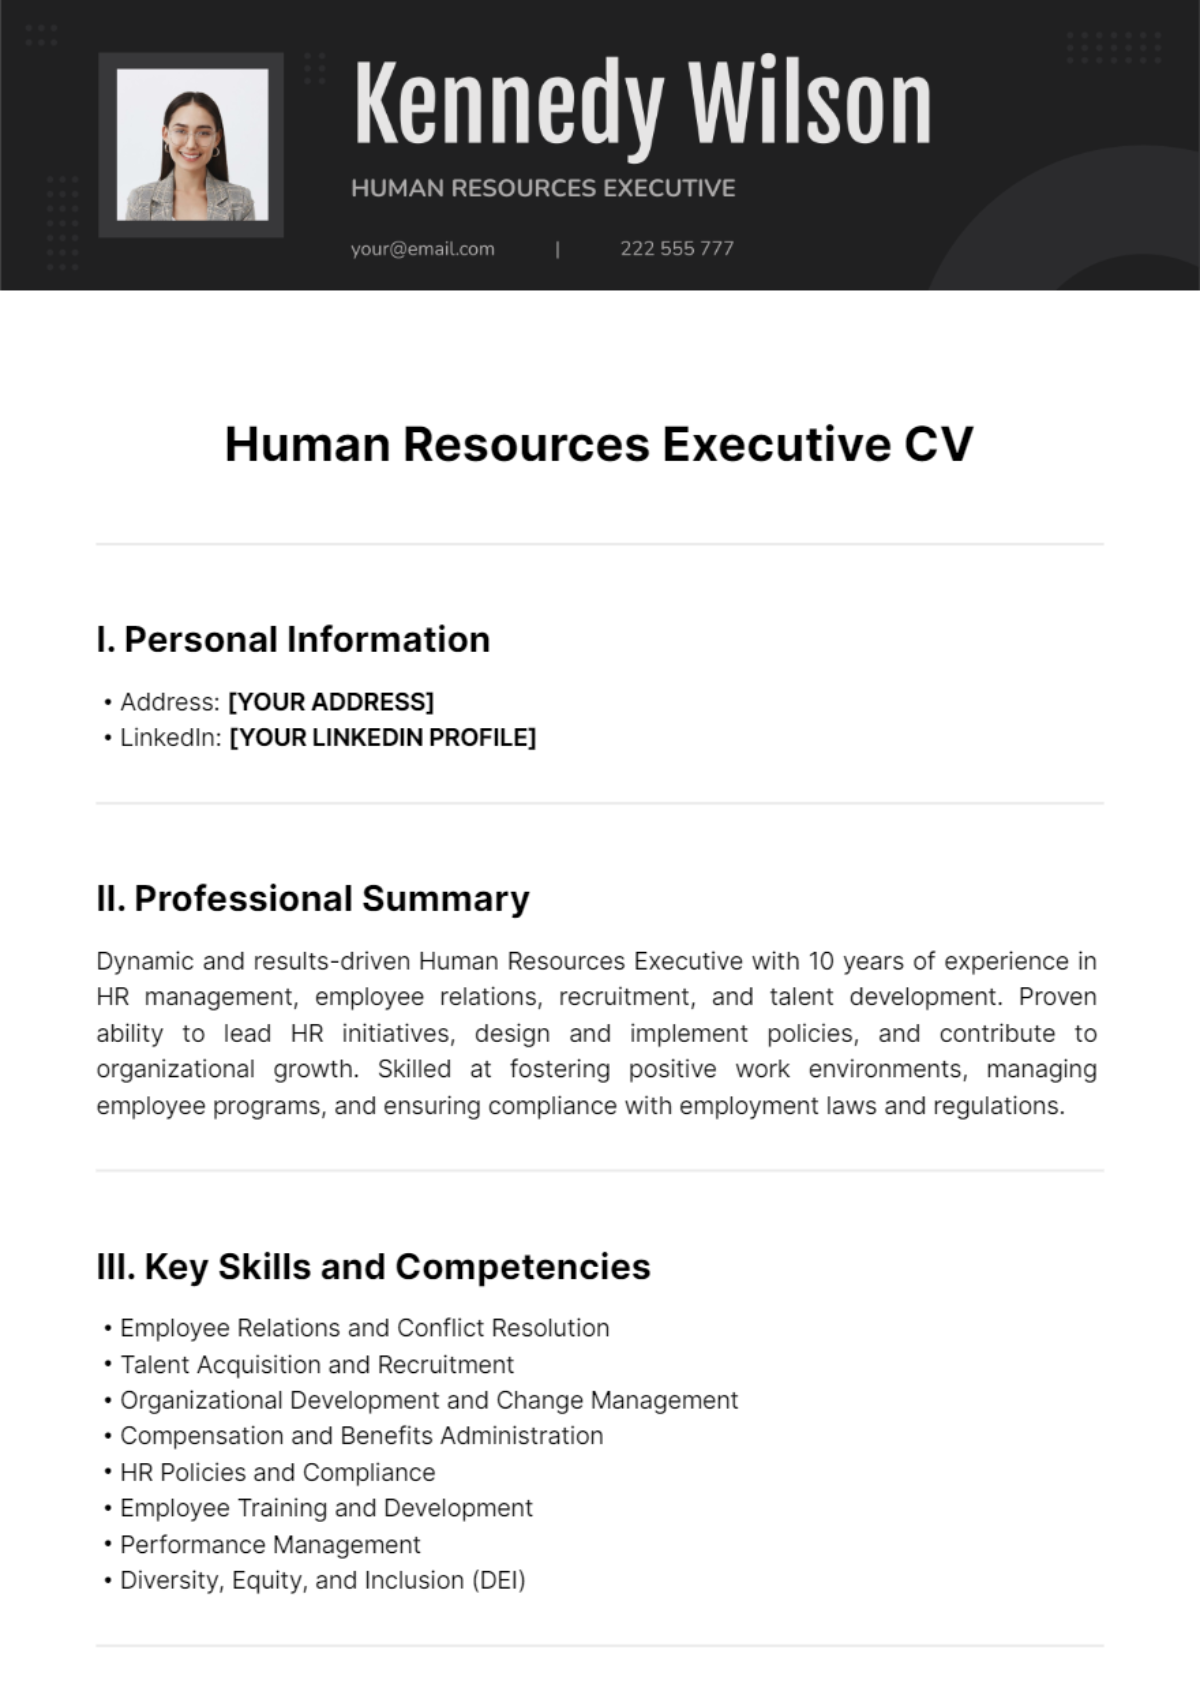 Human Resources Executive CV Template